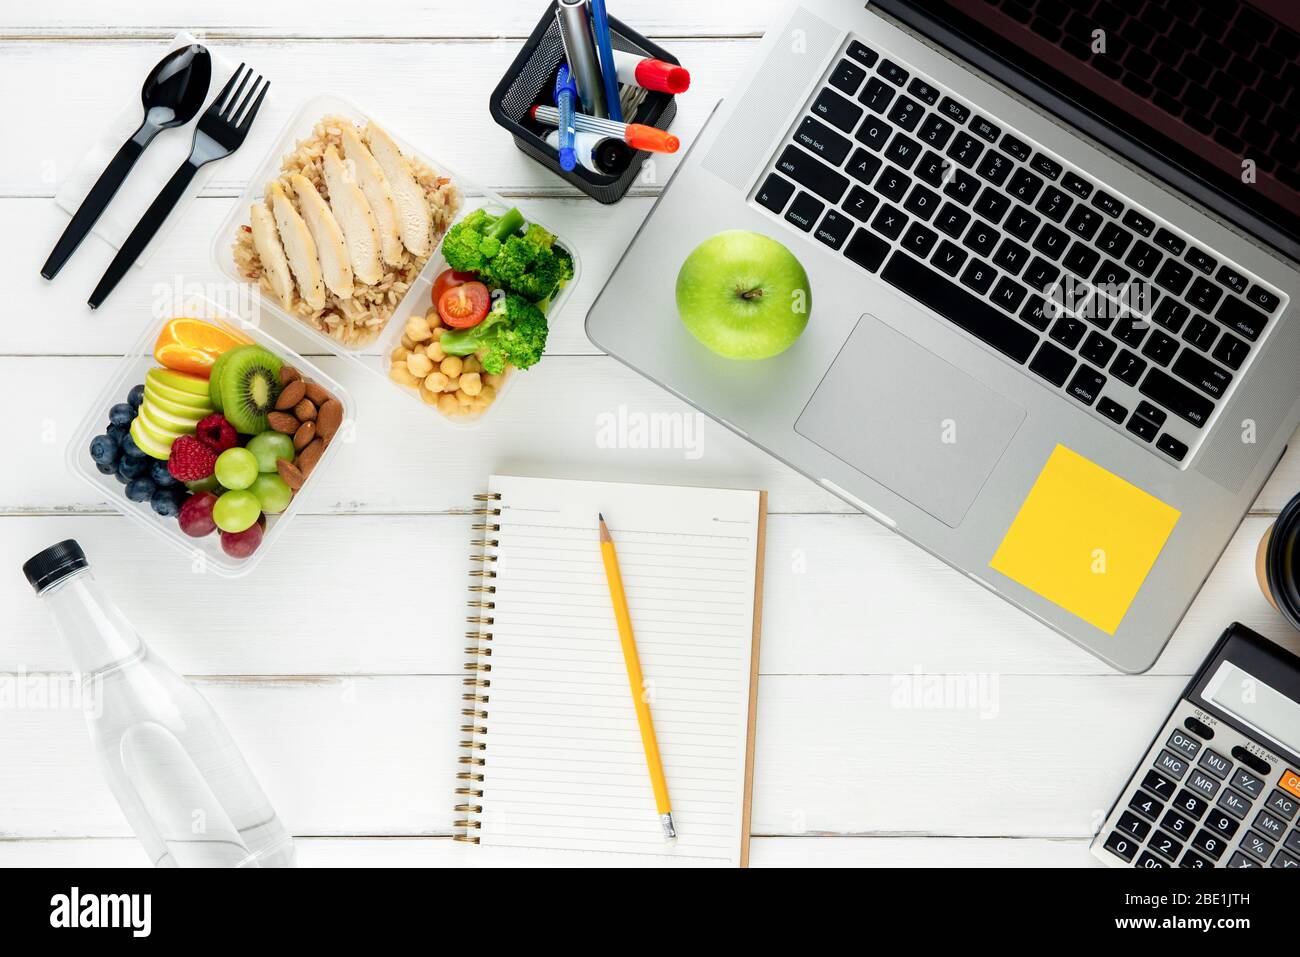 Nehmen Sie nährstoffreiche Lebensmittel mit Laptop-Computer und Ausrüstung auf dem Tisch für die Arbeit von zu Hause aus vorbereitet Stockfoto